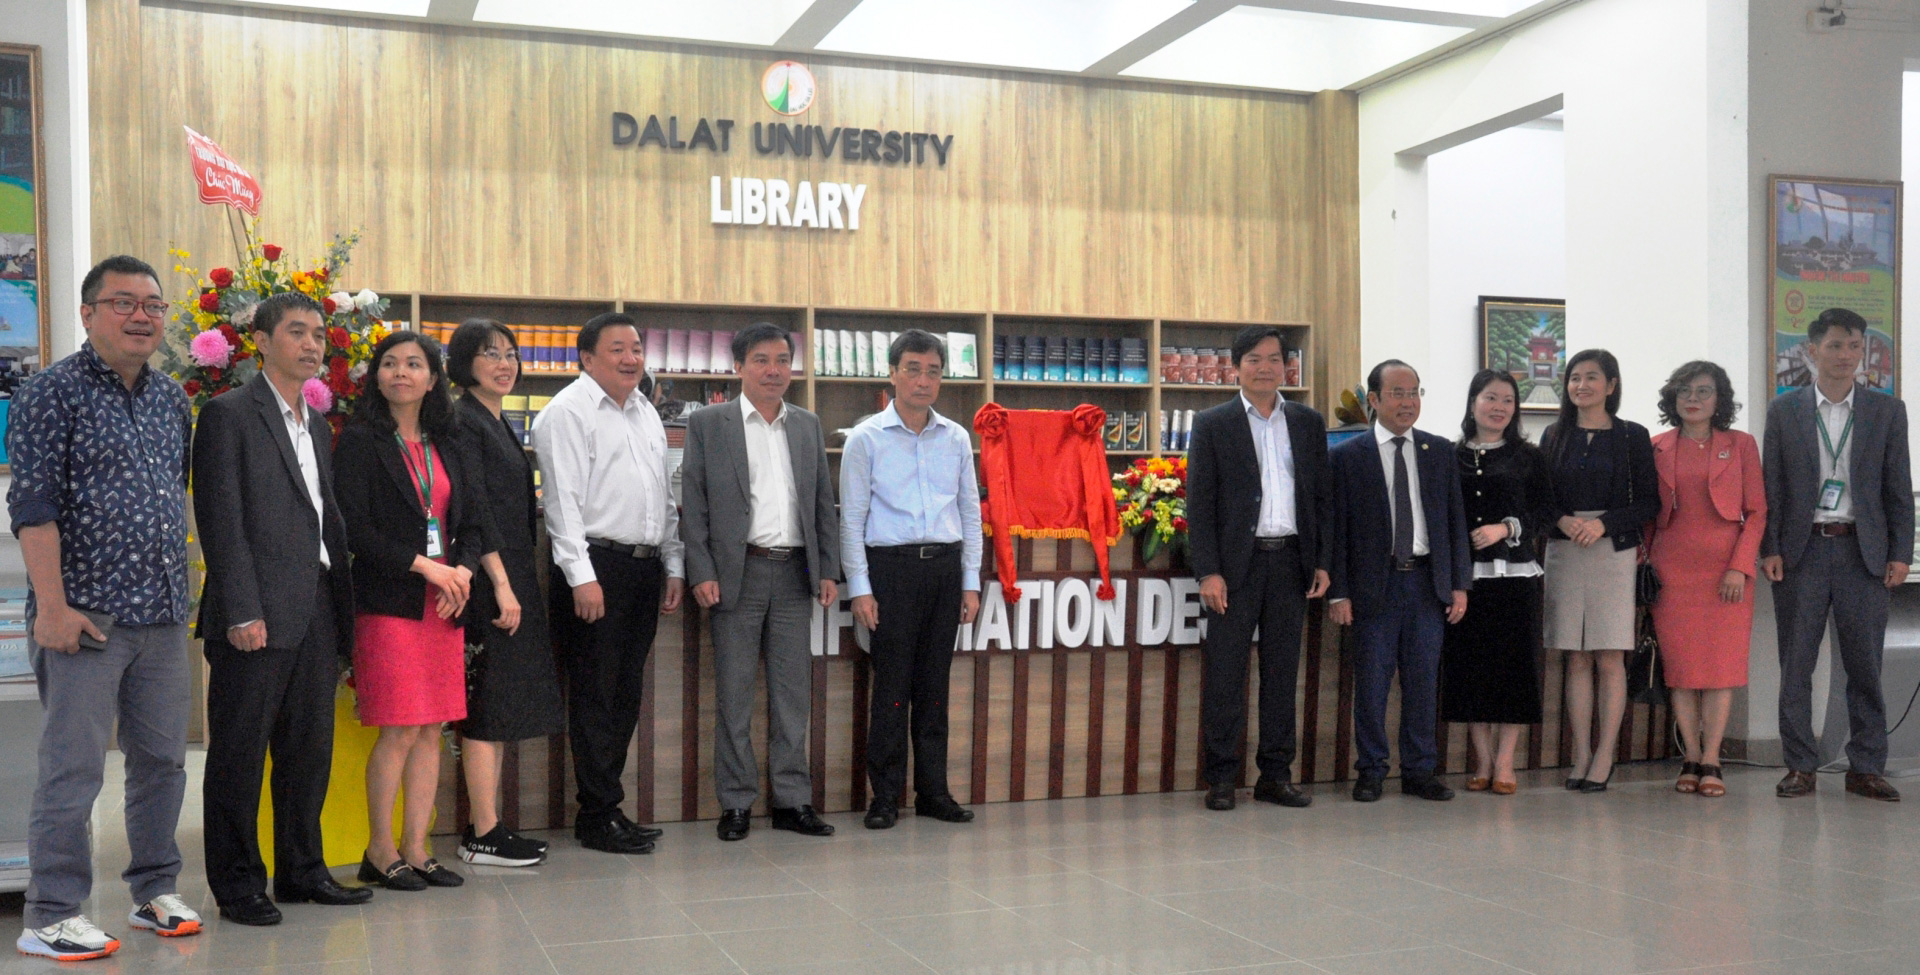 Các đại biểu khai trương không gian đọc tại Thư viện Trường Đại học Đà Lạt